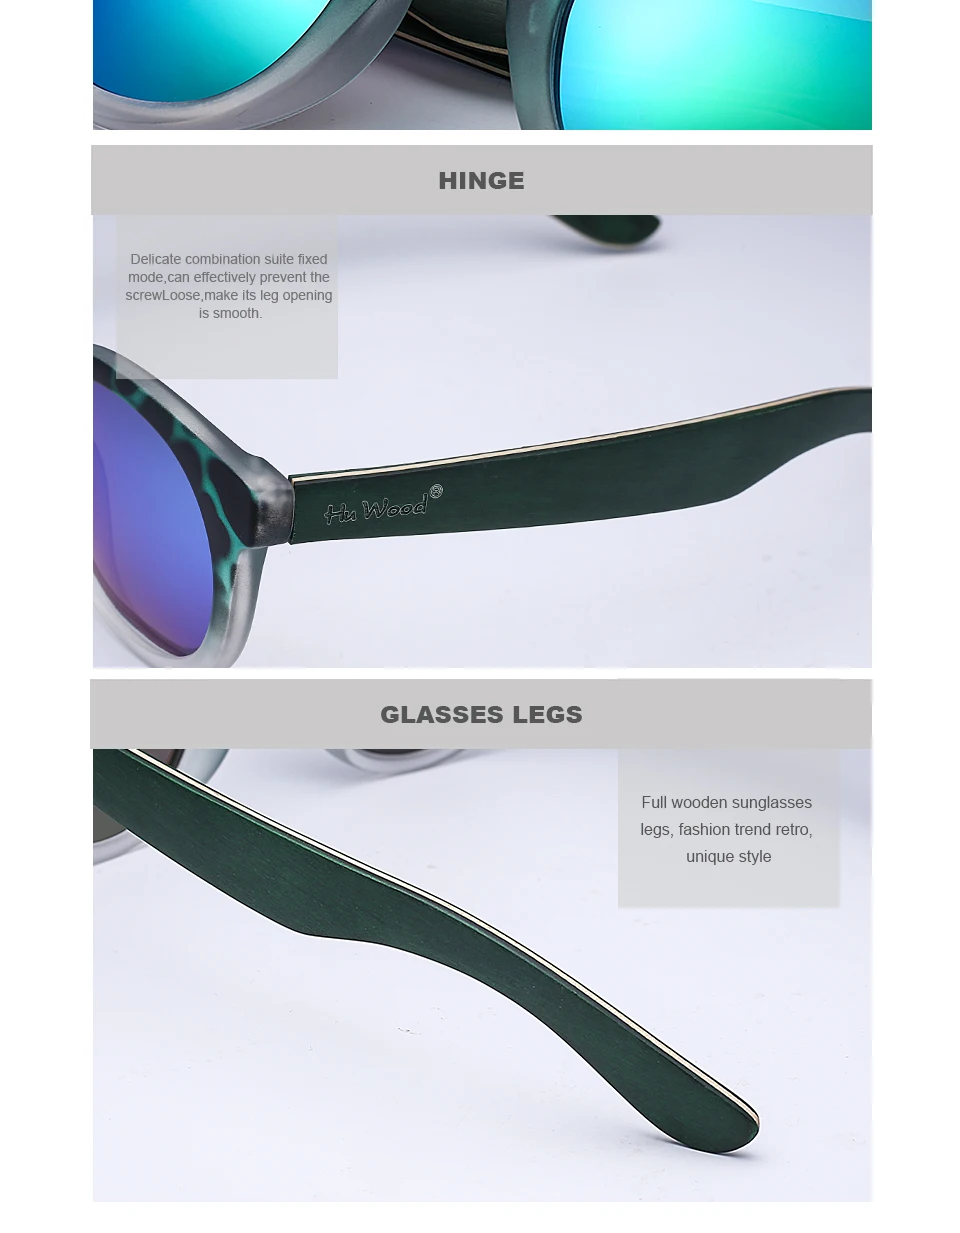 Hu Wood, новинка, винтажные Круглые Солнцезащитные очки для женщин, фирменный дизайн, Ретро стиль, круглые в полоску, солнцезащитные очки для женщин, Oculos De Sol Feminino Gafas